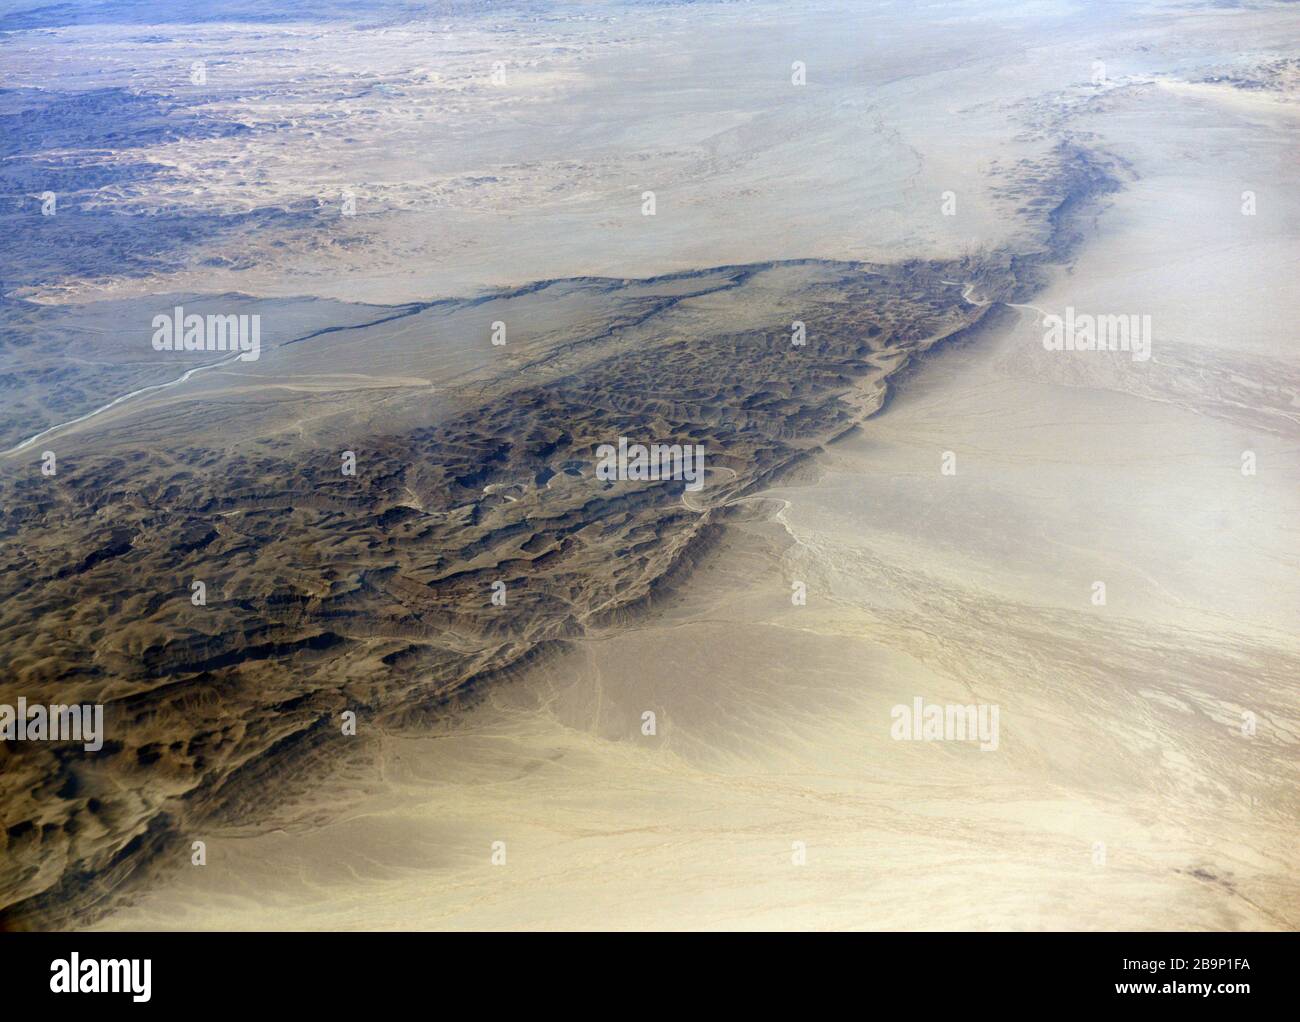 Aerial desert views in Egypt's Eastern desert. Stock Photo